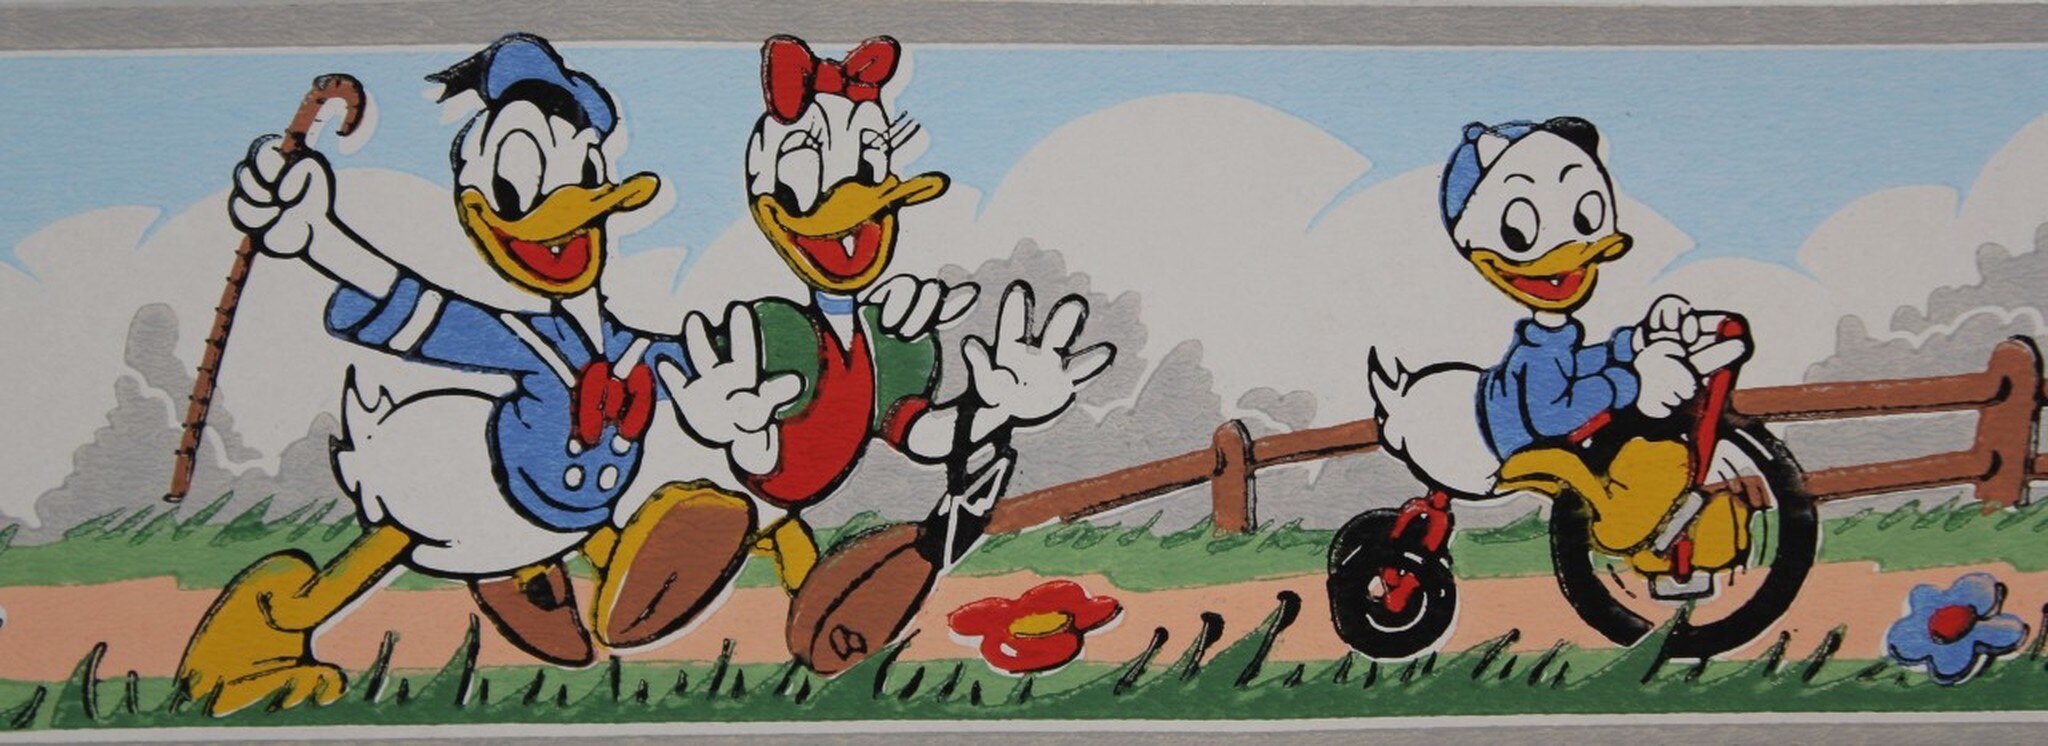 Donald Duck Retro - HD Wallpaper 